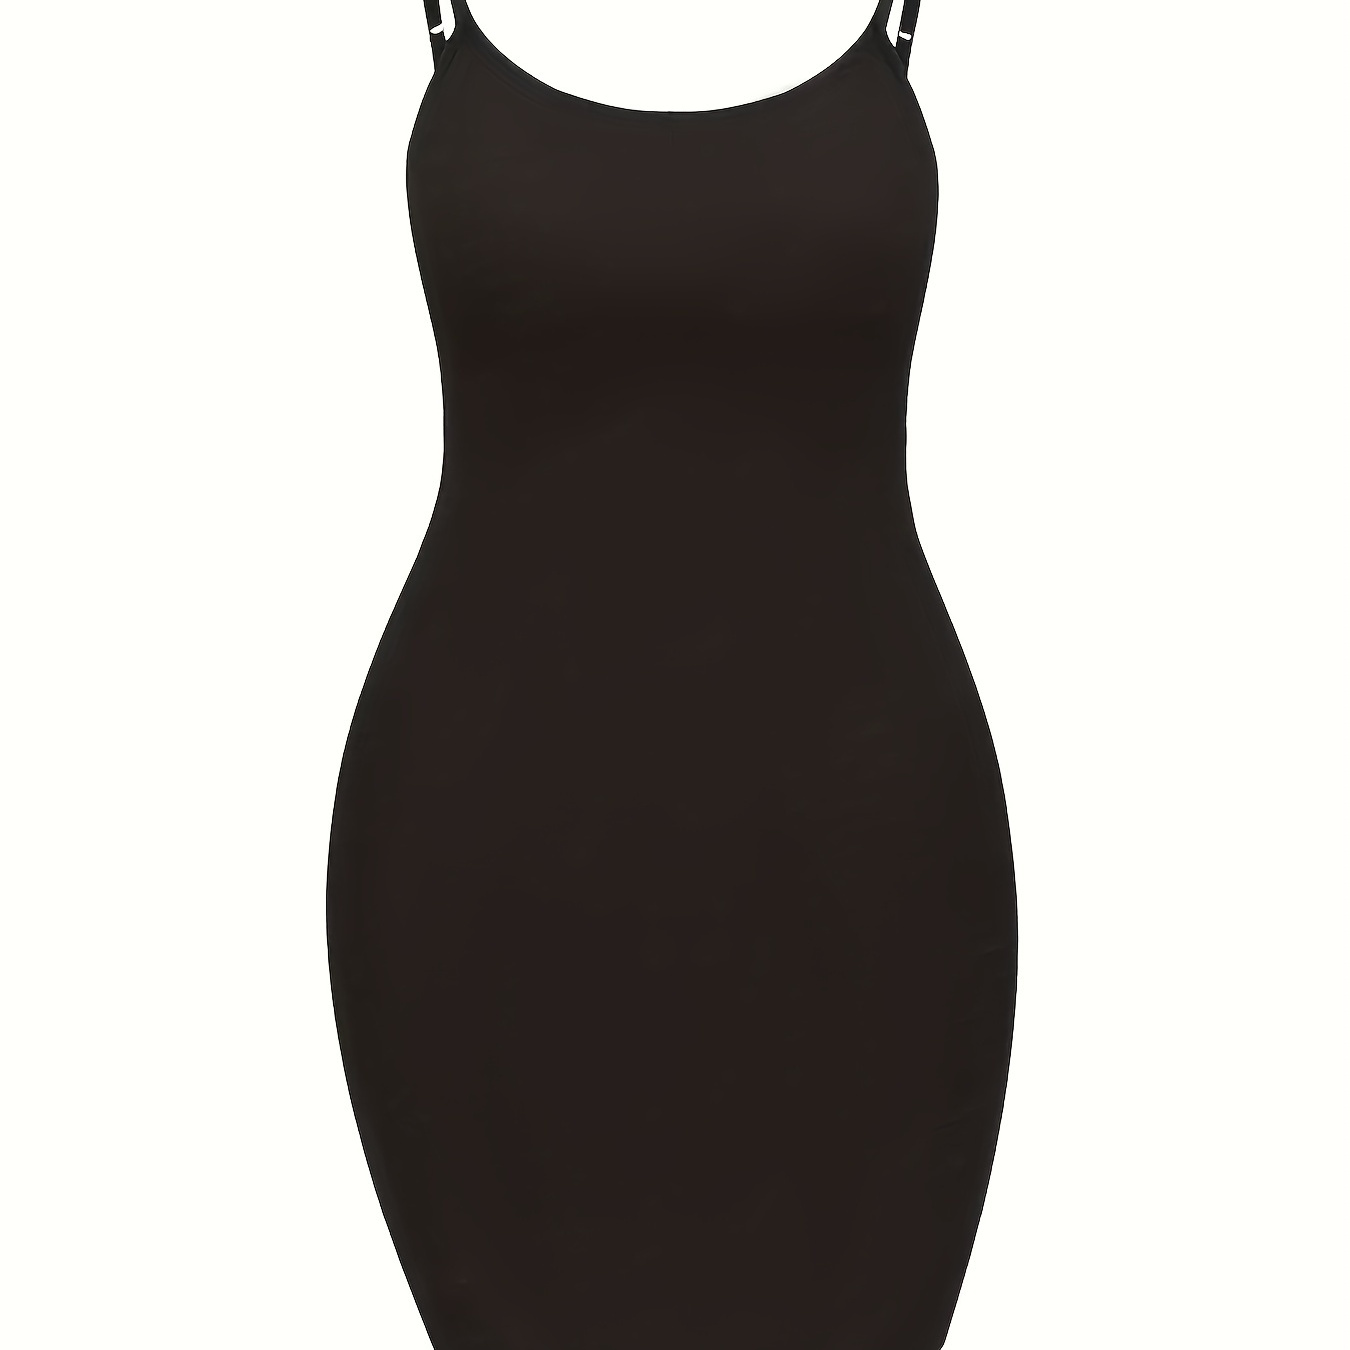 

Plus Size Fashion Dress, Women's Plus Solid Scoop Neck Spaghetti Strap Sexy Body-con Cami Dress